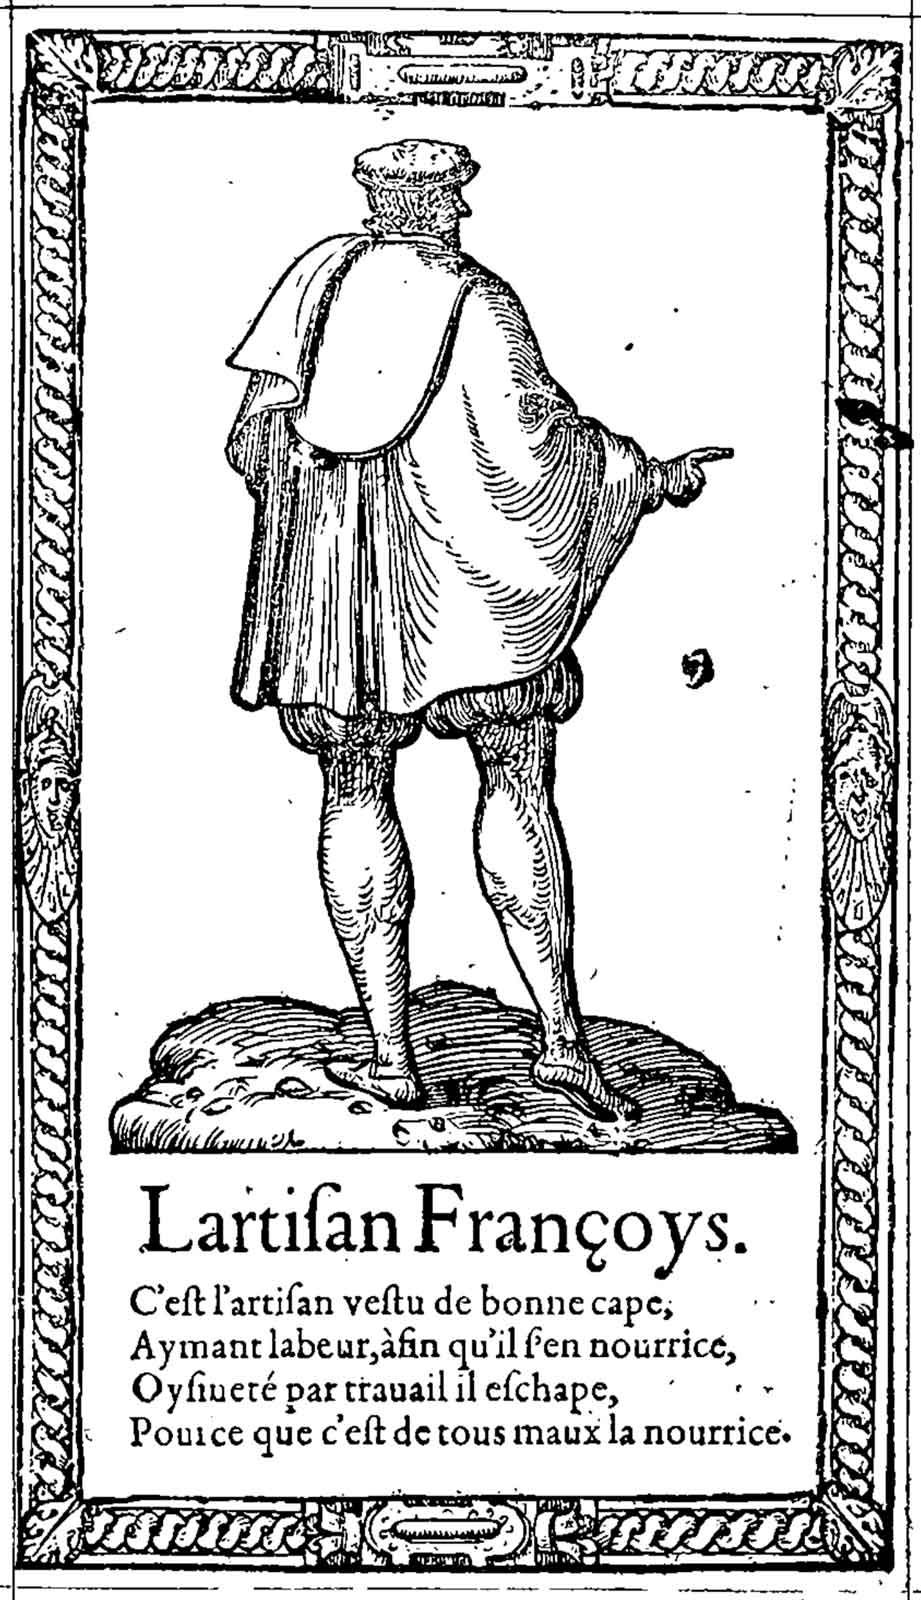 L’artisan. Desprez, Recueil de la diversité des habits (1564)